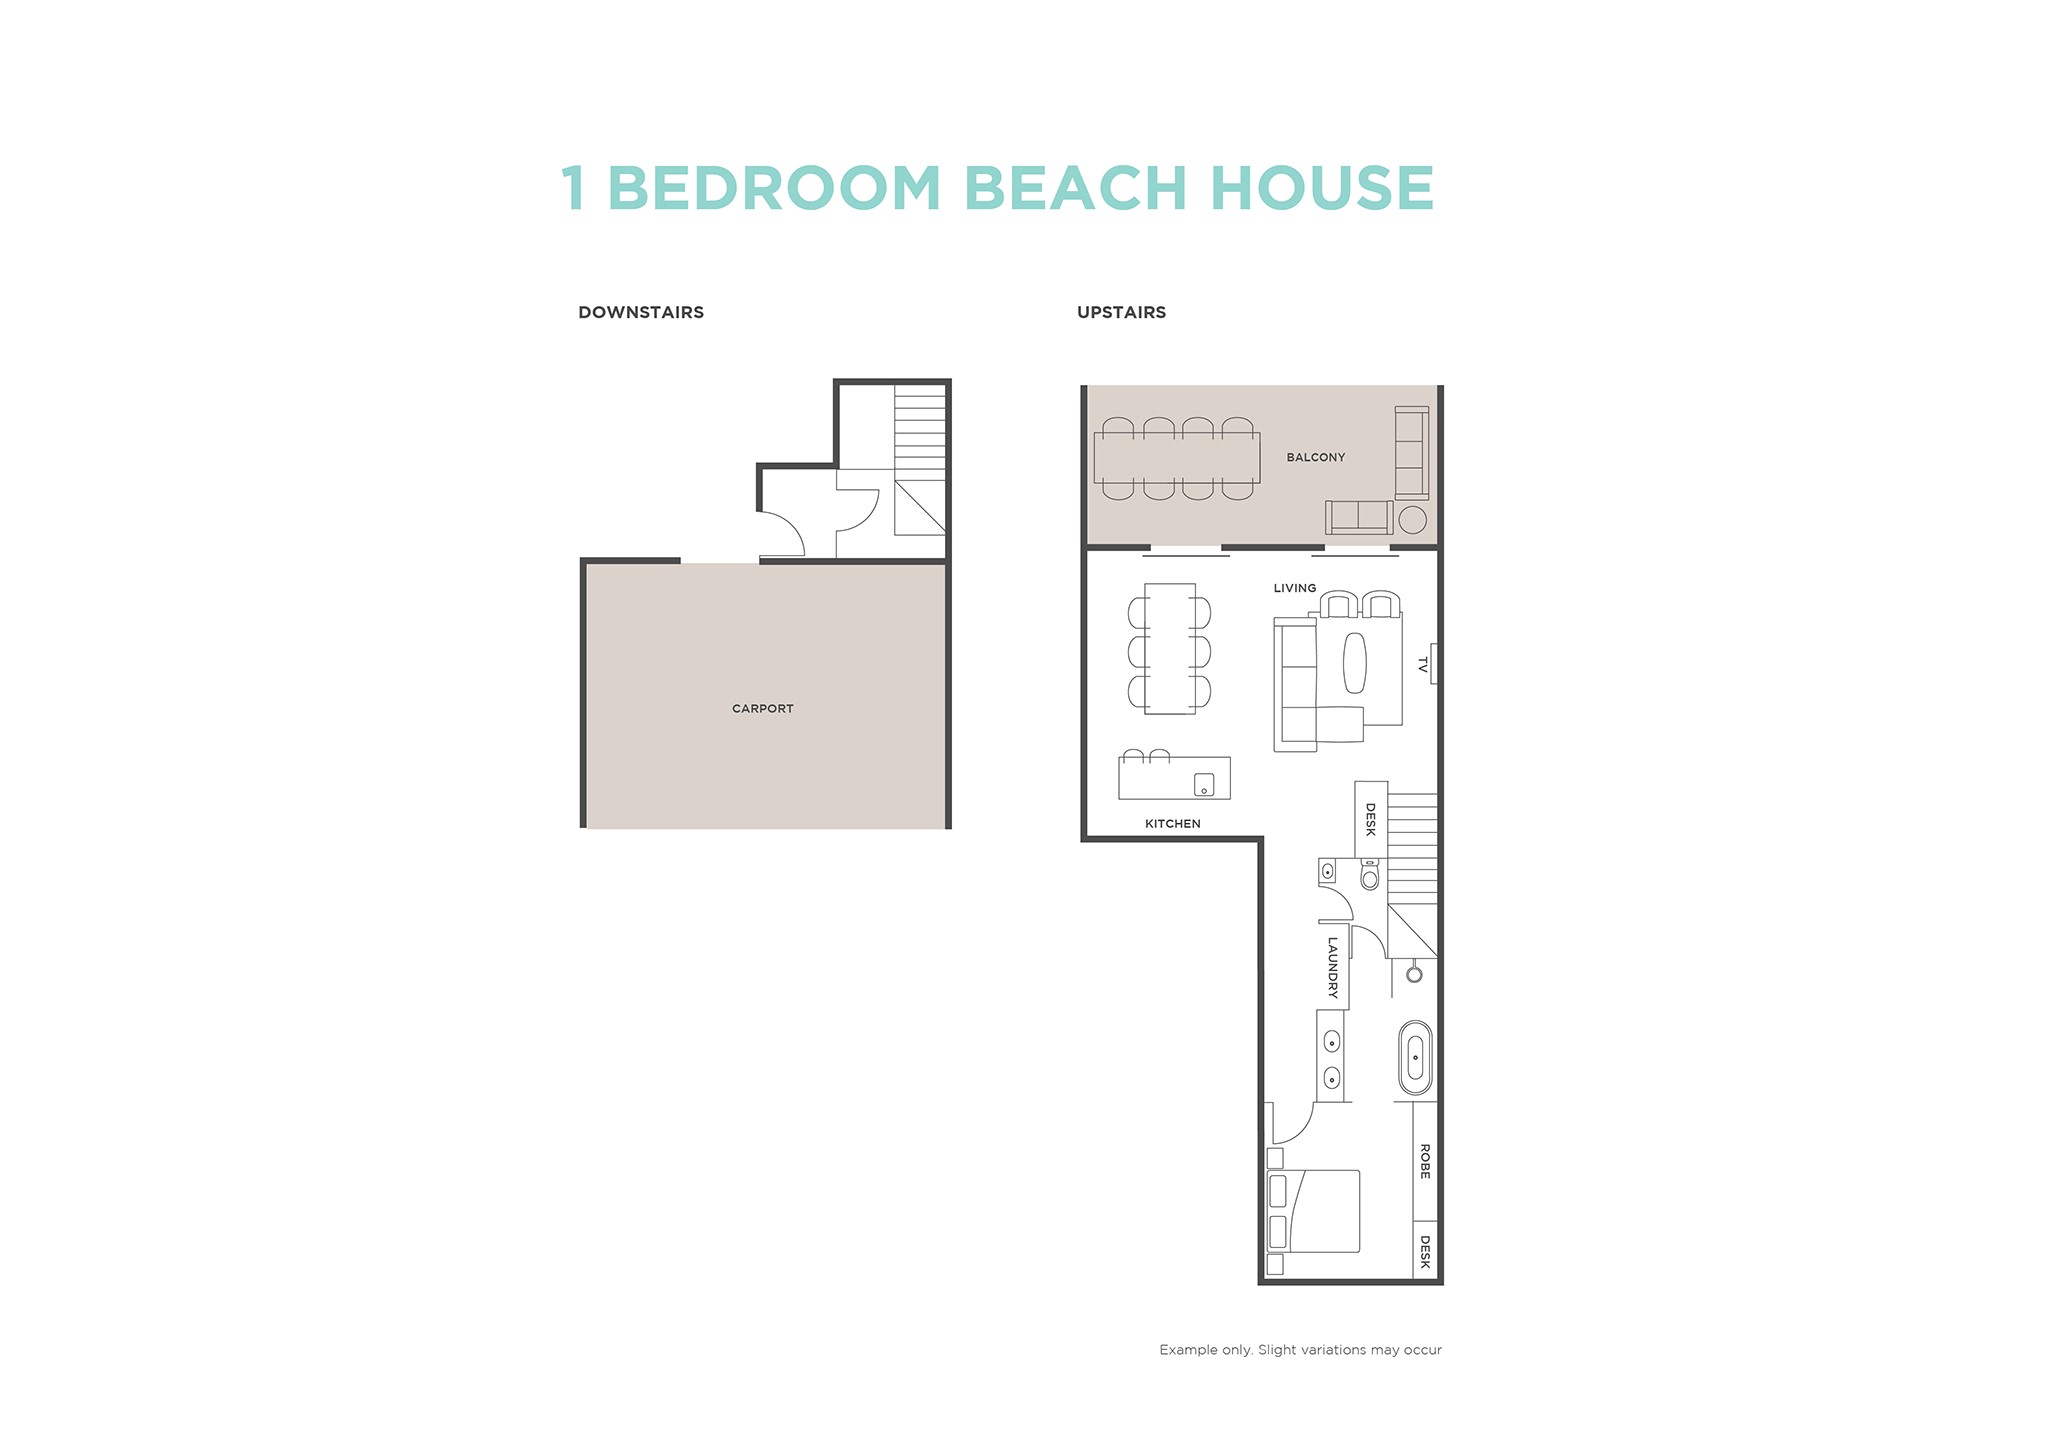 1 Bedroom Beach House floor plan